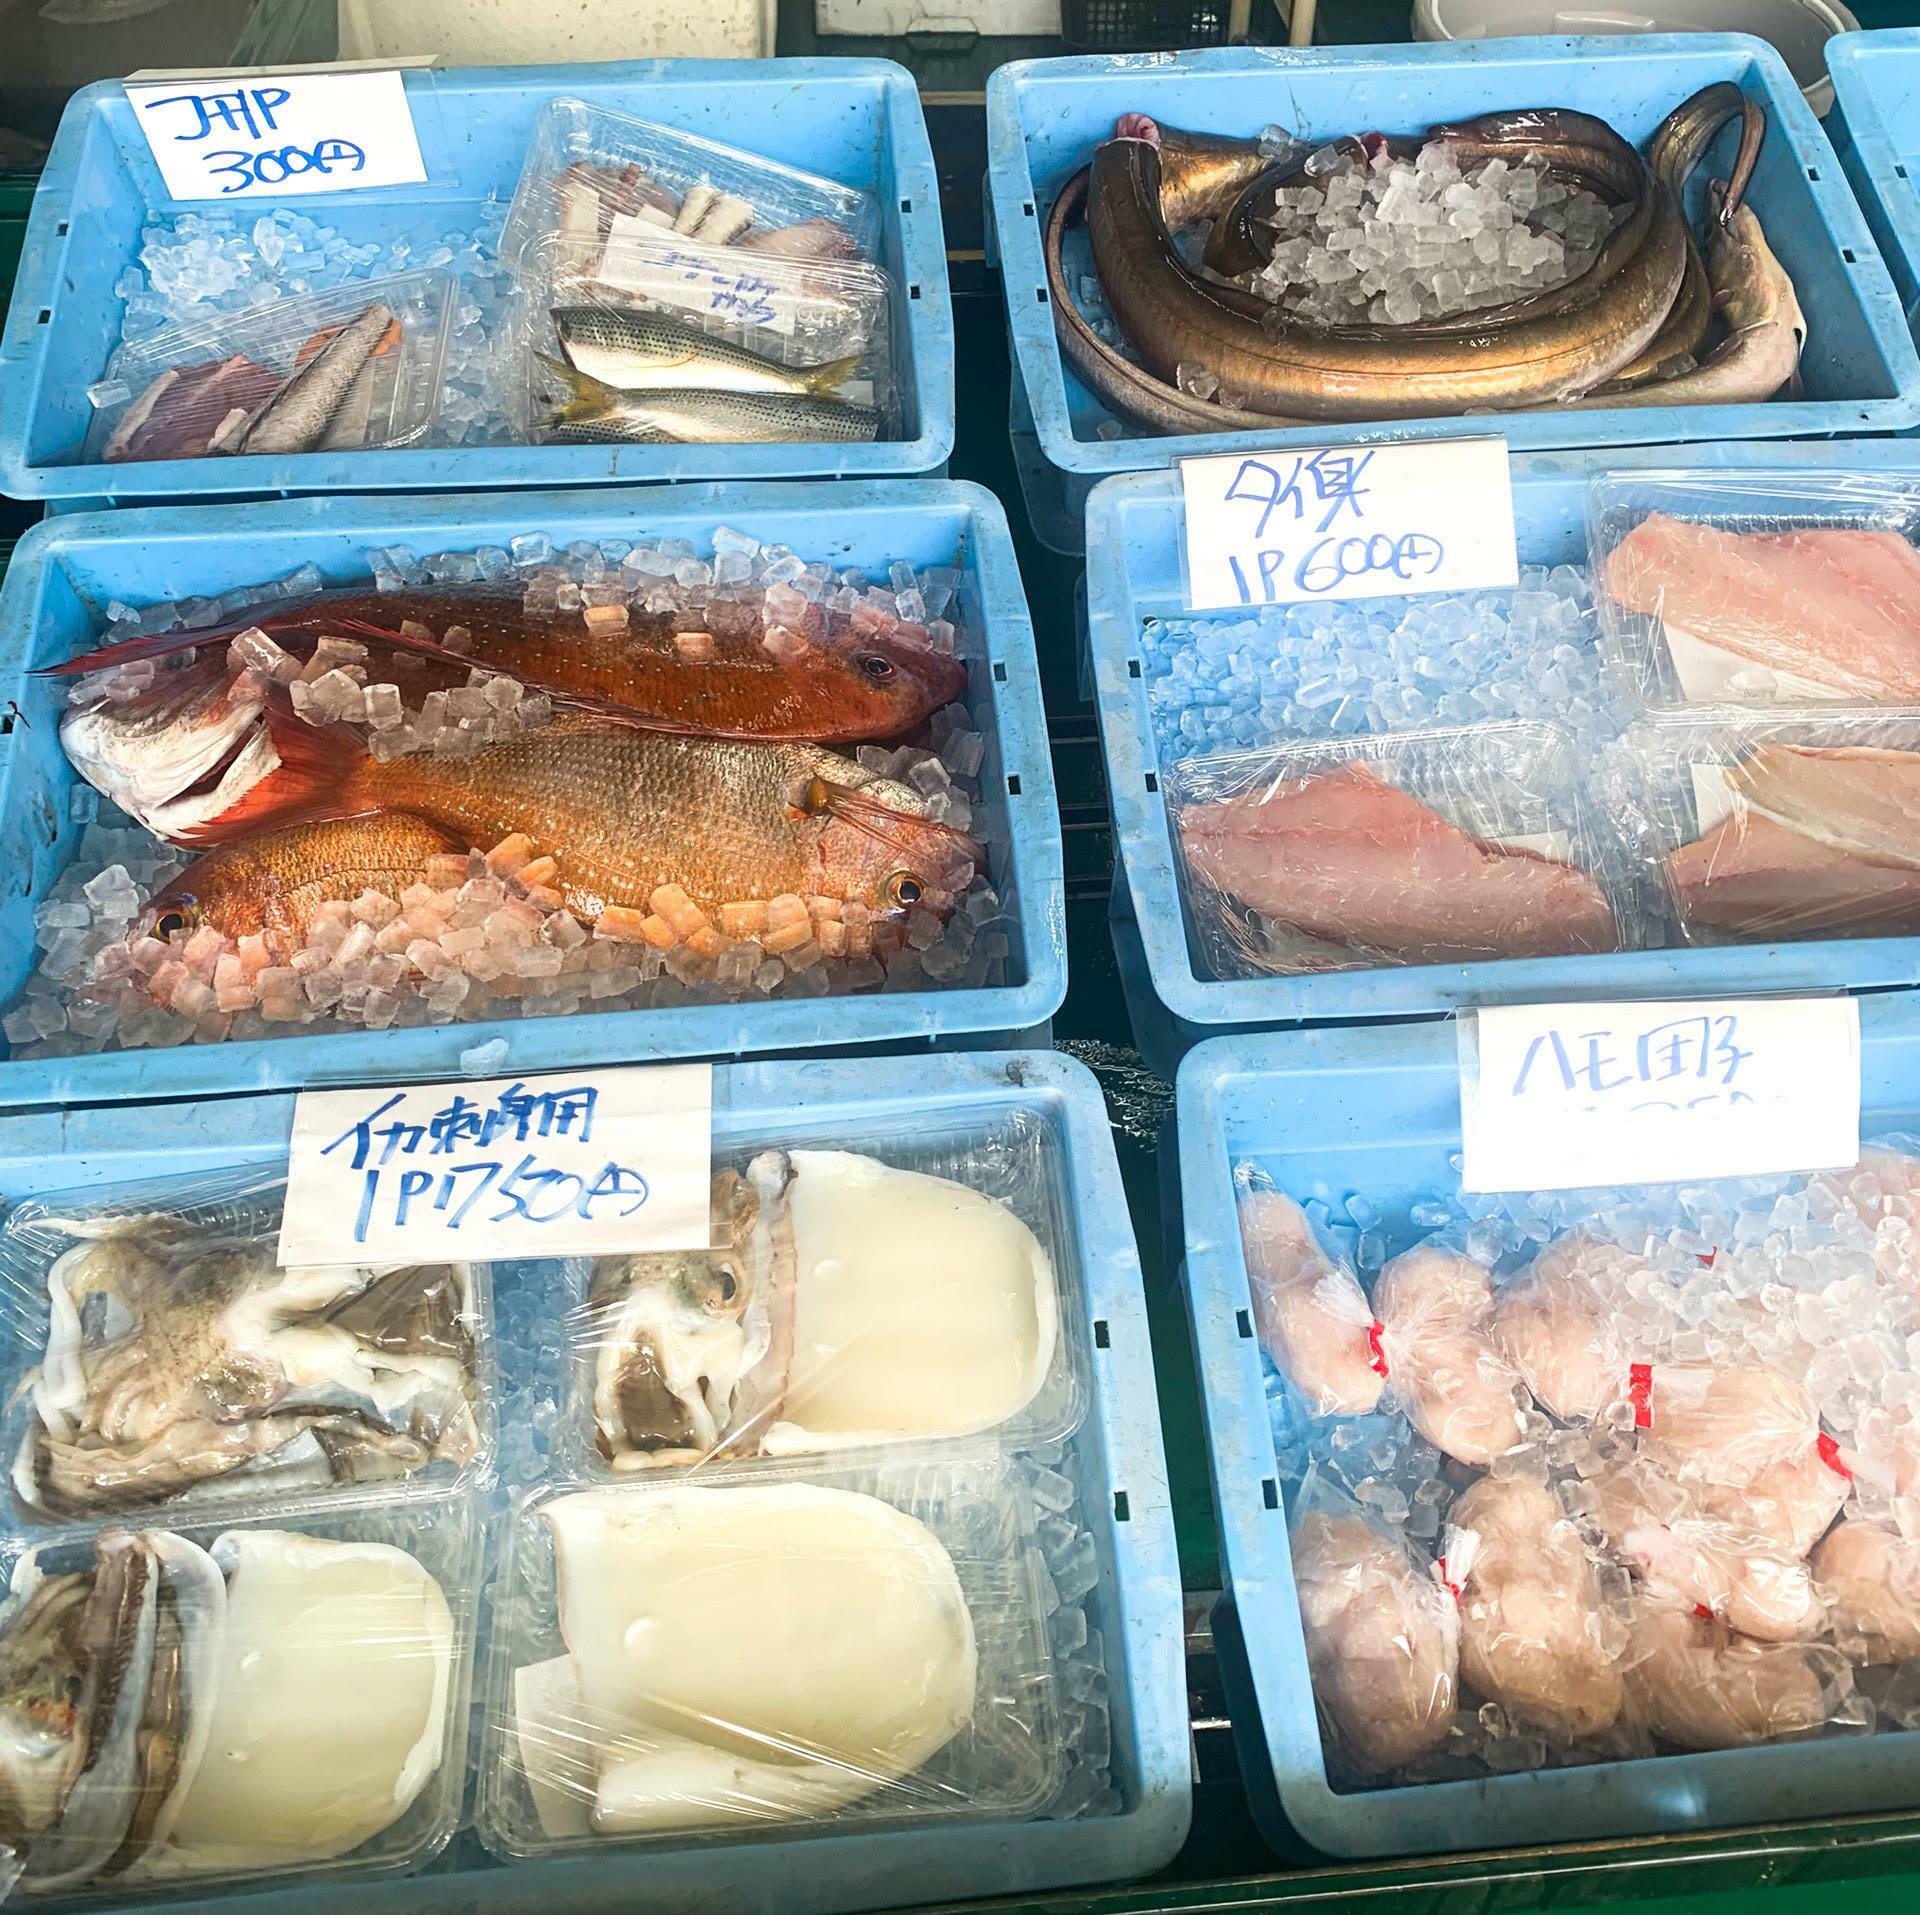 新鮮な魚以外にも鯛の切り身やハモ団子も販売されていました。